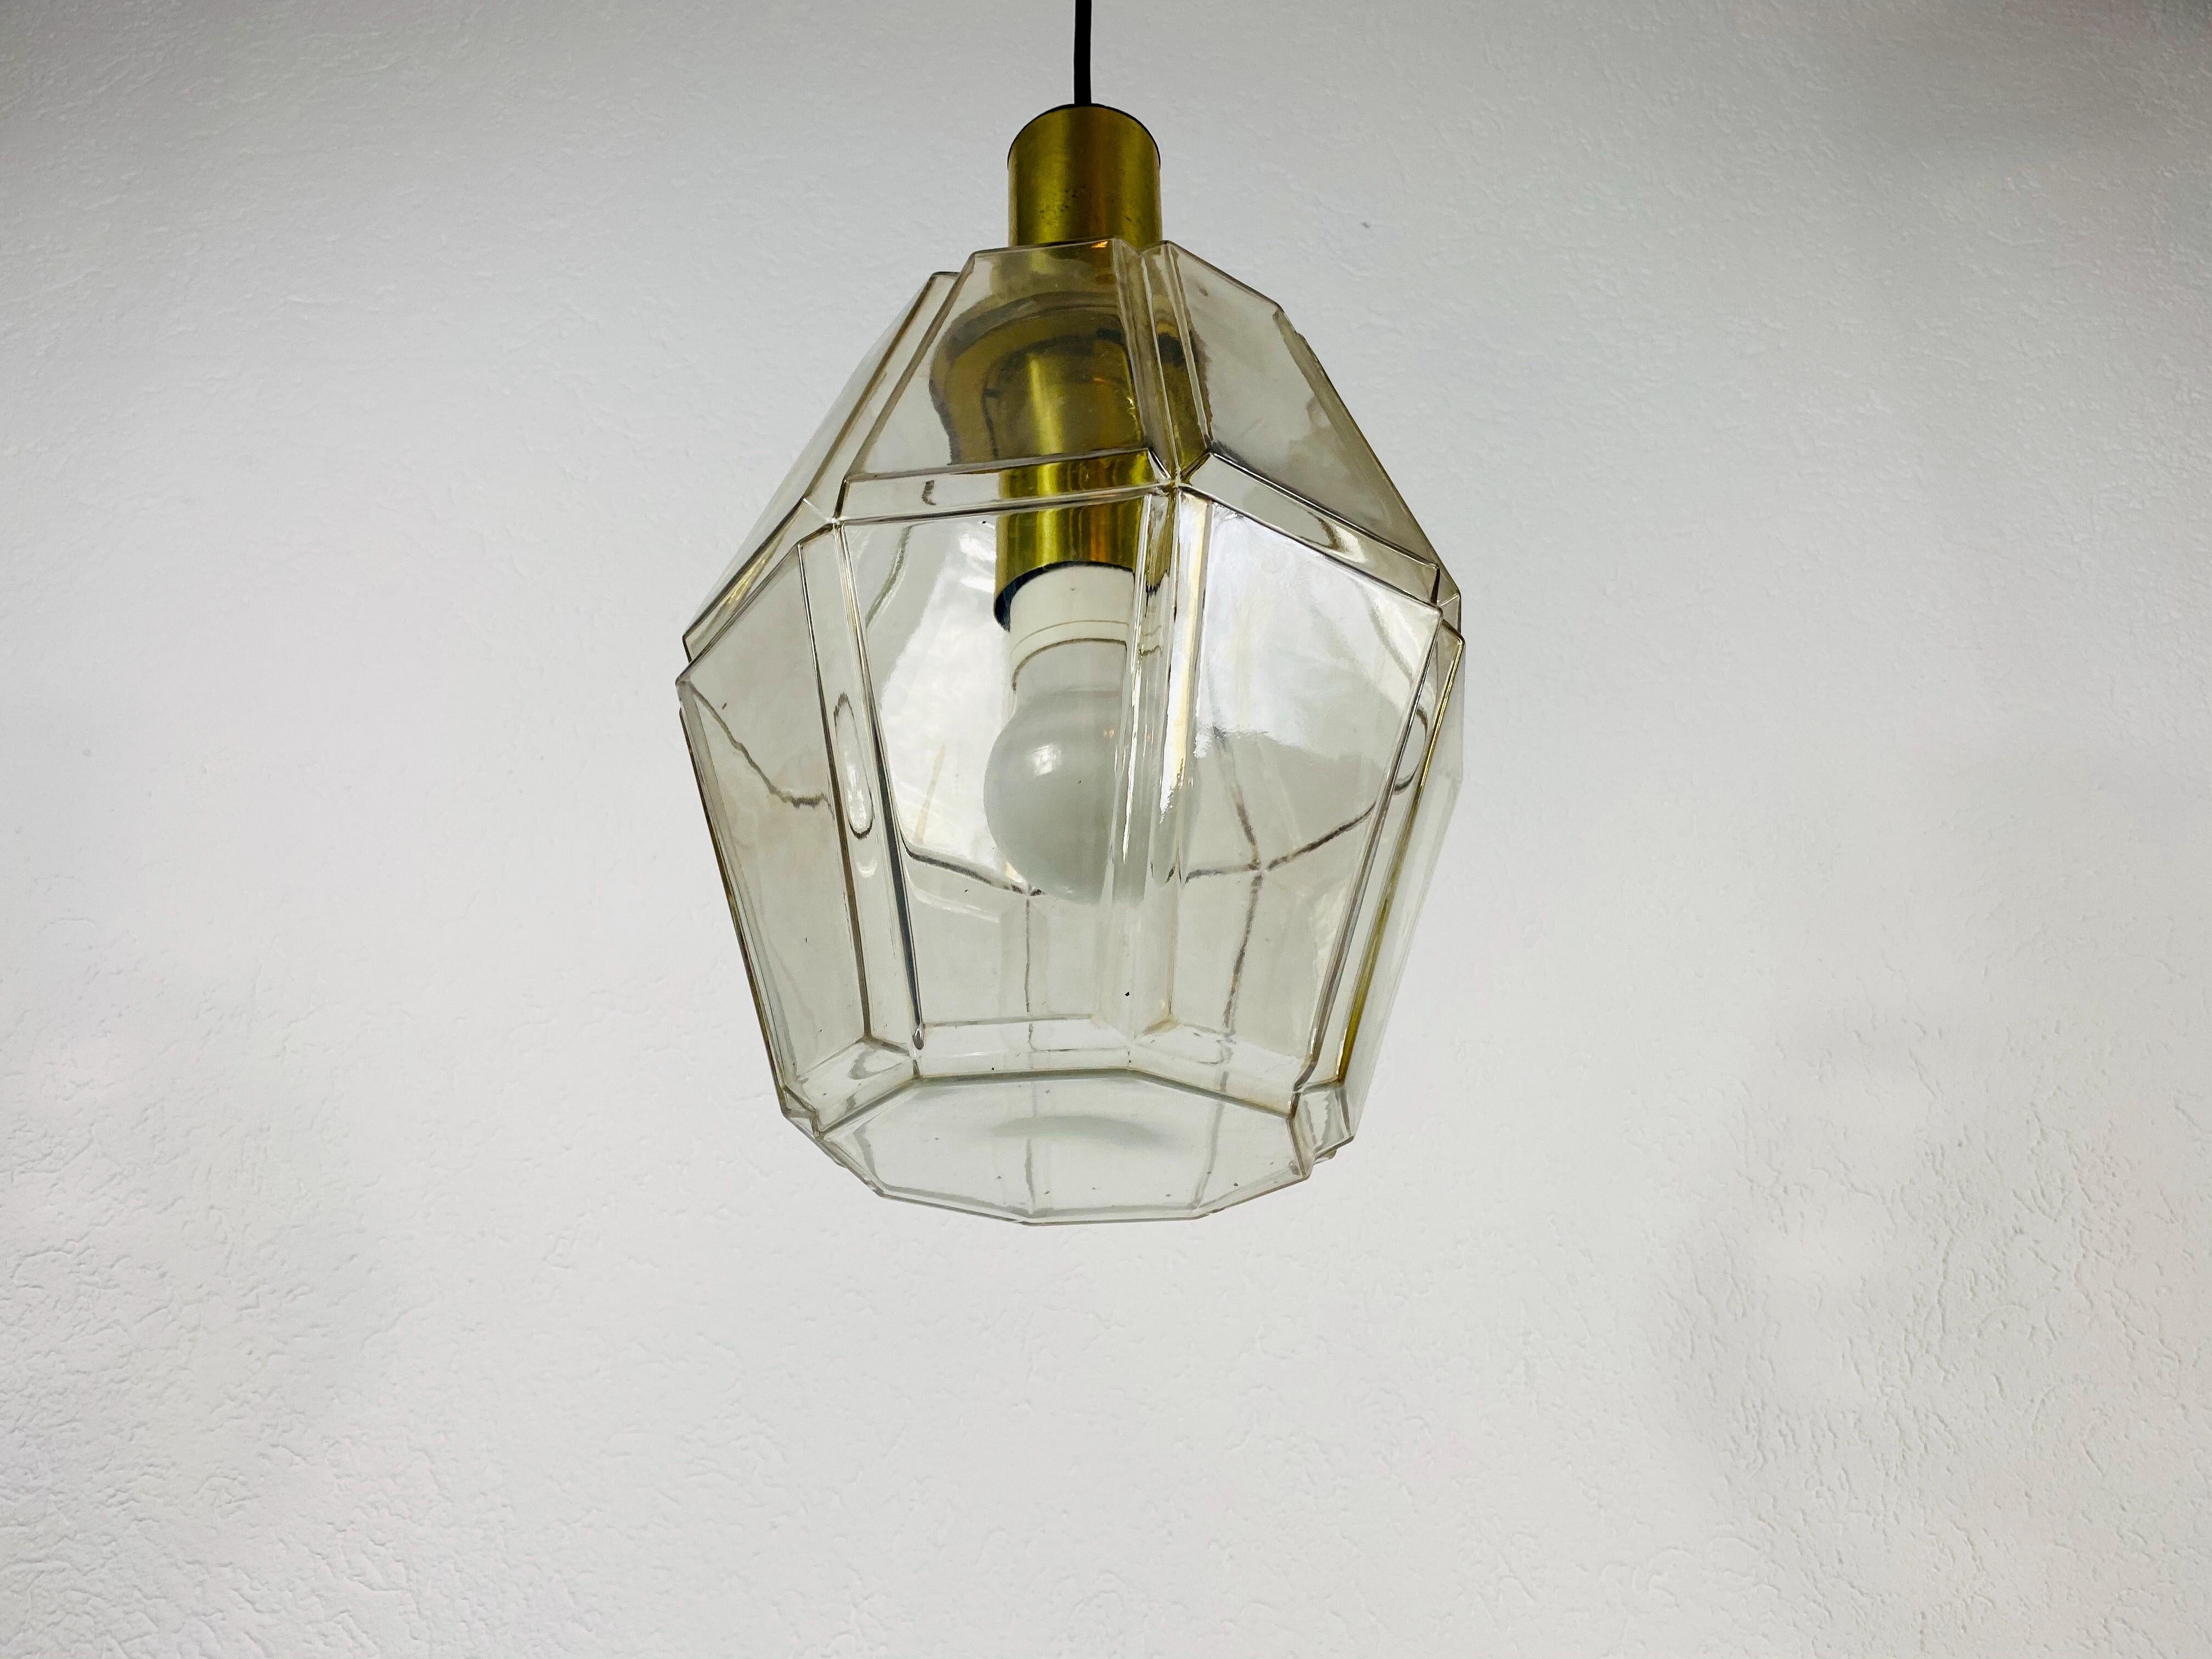 Une lampe suspendue de style moderne du milieu du siècle par Glashütte Limburg, fabriquée dans les années 1960 en Allemagne. Il est fascinant avec son beau verre structuré. Le luminaire a un très beau design minimaliste.

Le luminaire nécessite